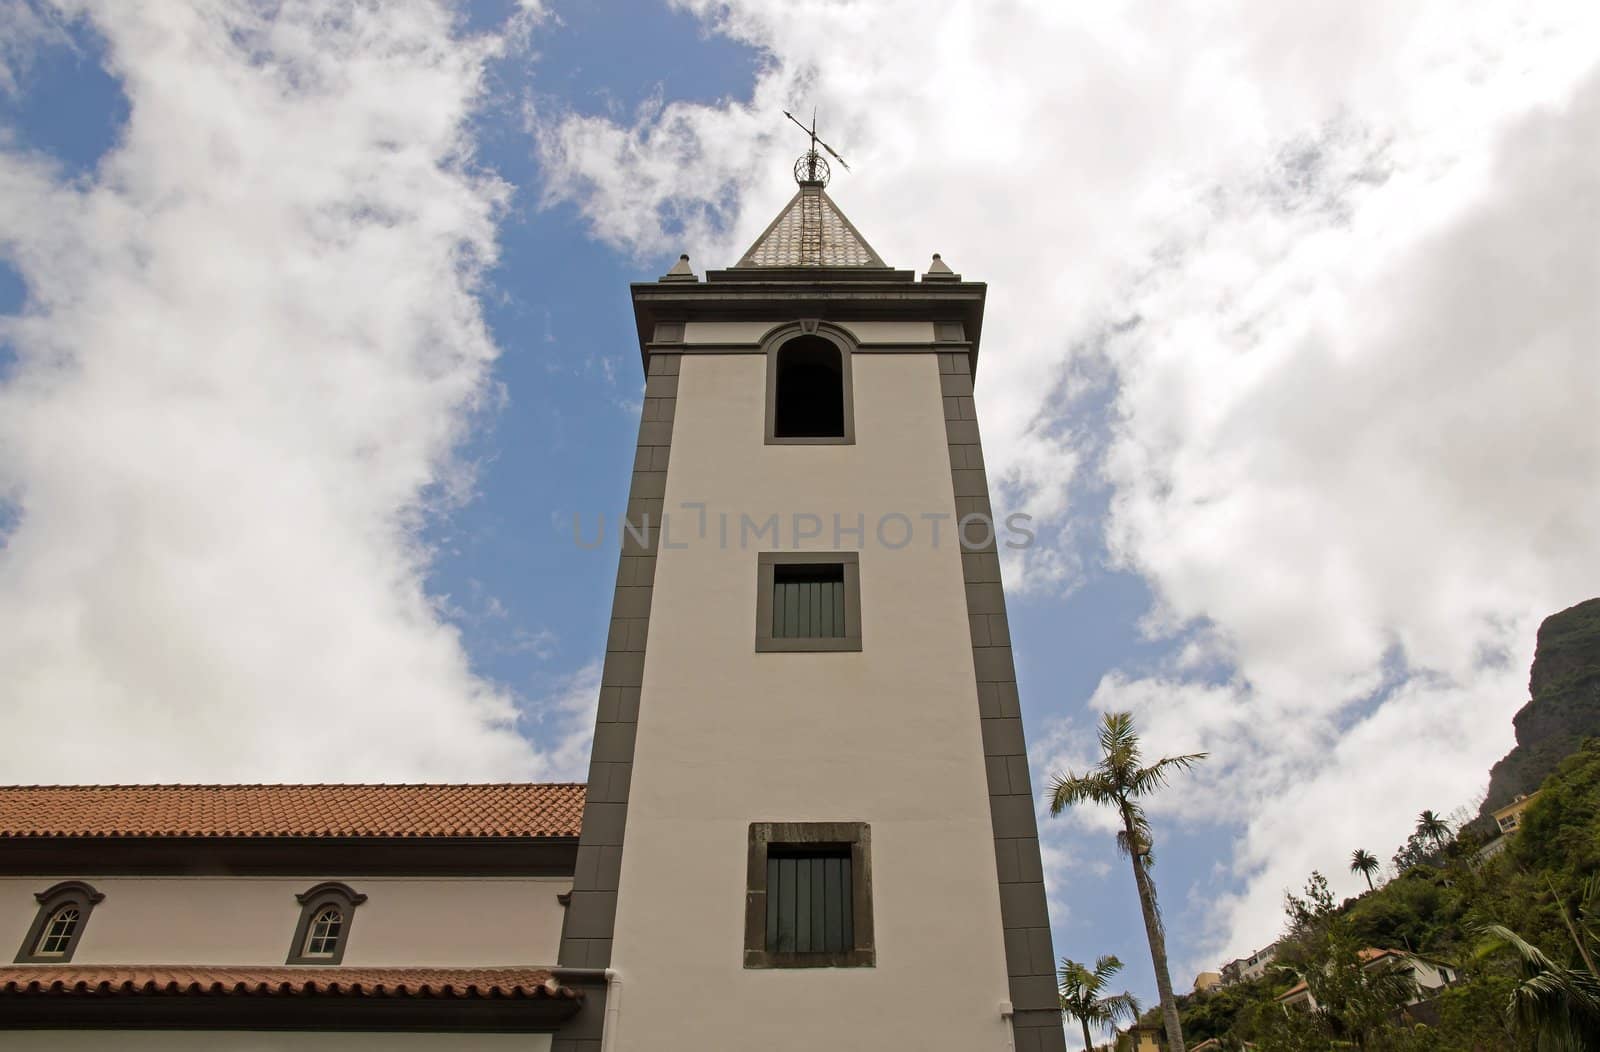 Church Sao Vicente, bell tower, Madeira by neko92vl